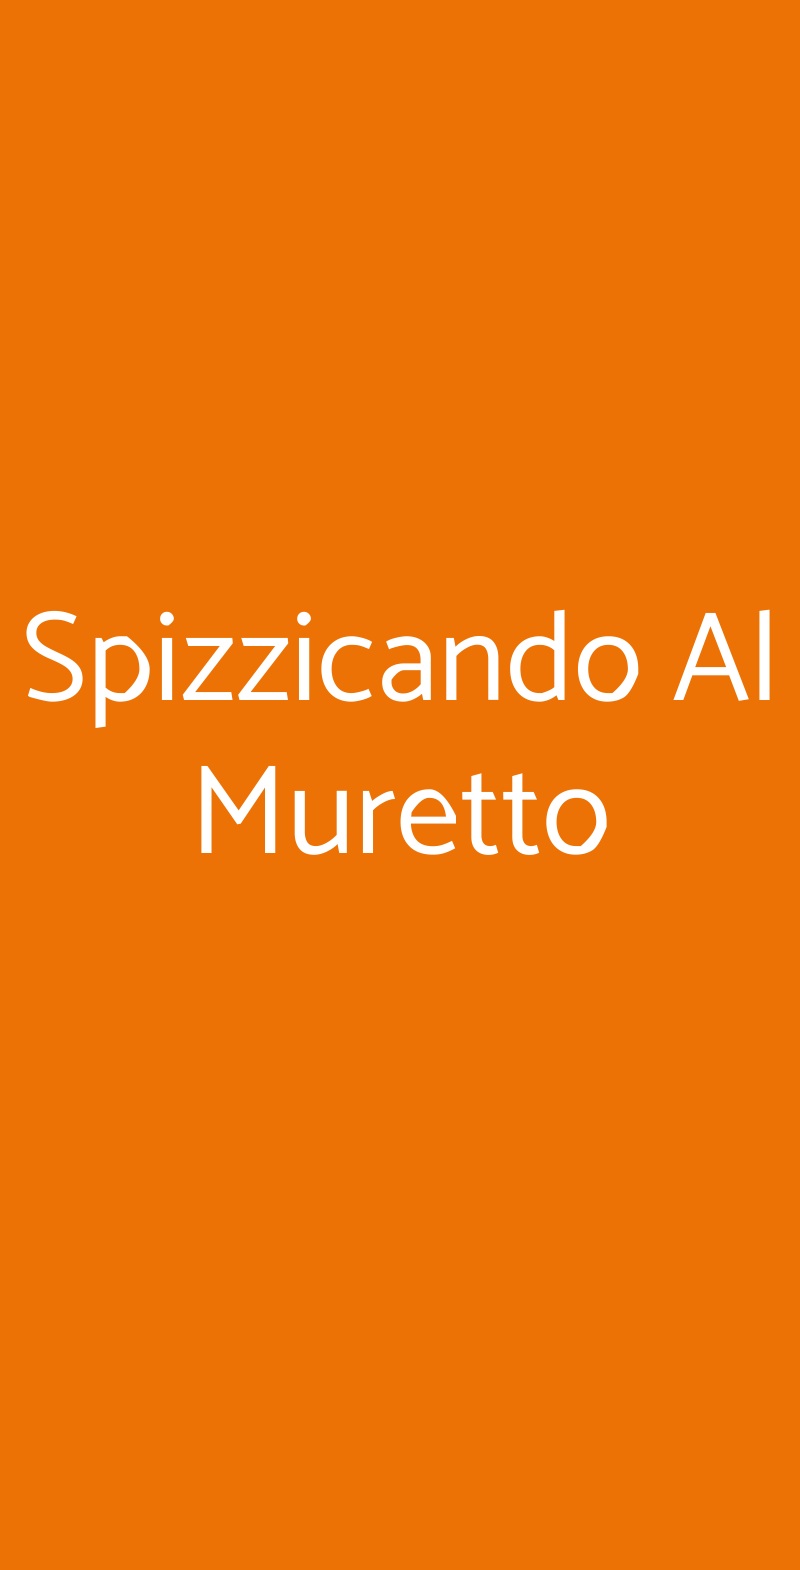 Spizzicando Al Muretto Benevento menù 1 pagina